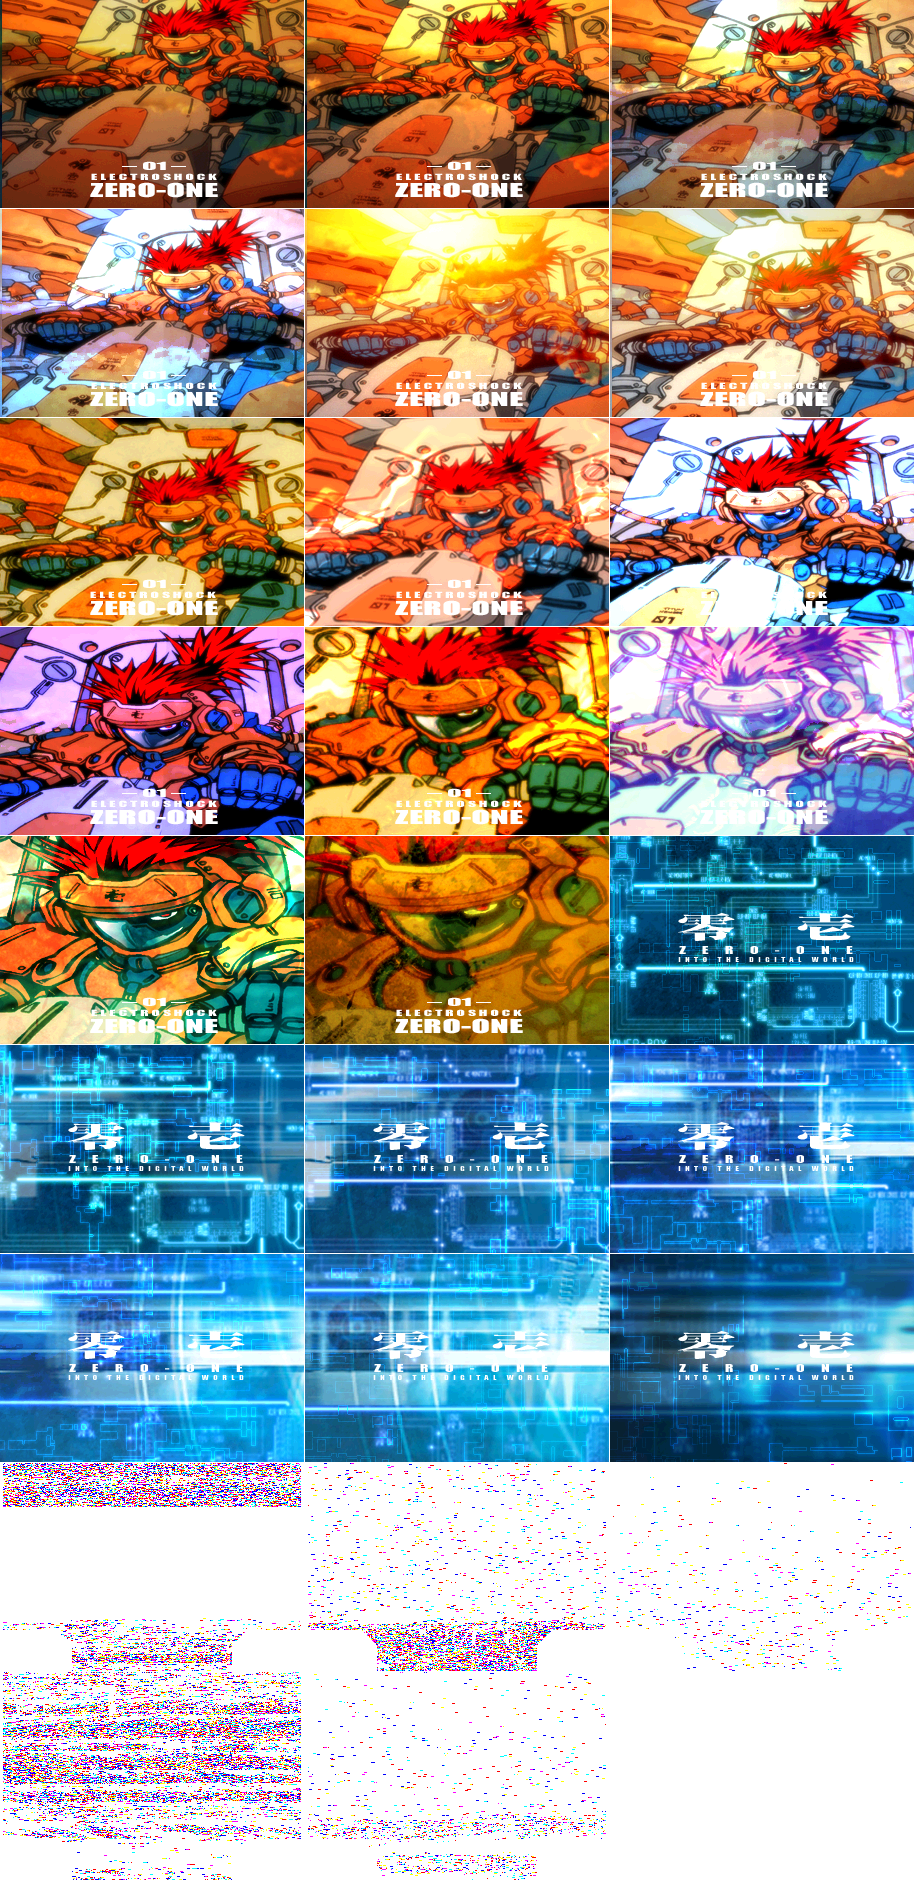 beatmania IIDX Series - ZERO-ONE (IIDX 10 Ver.)